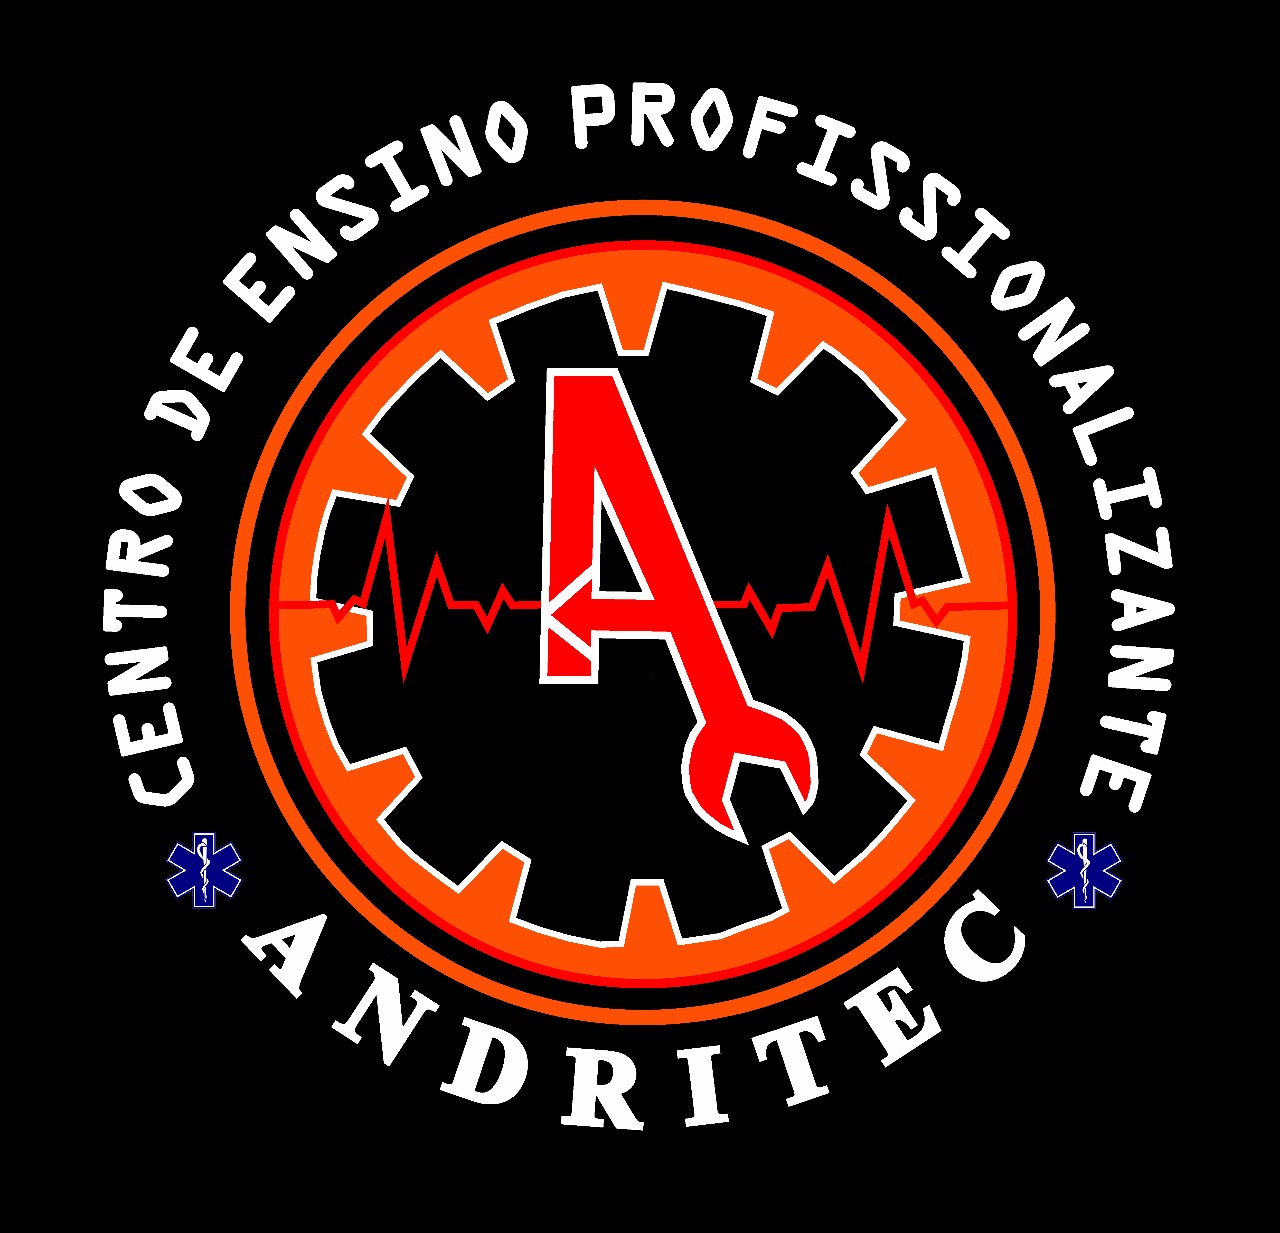 Andritec - Centro de Ensino Profissionalizante